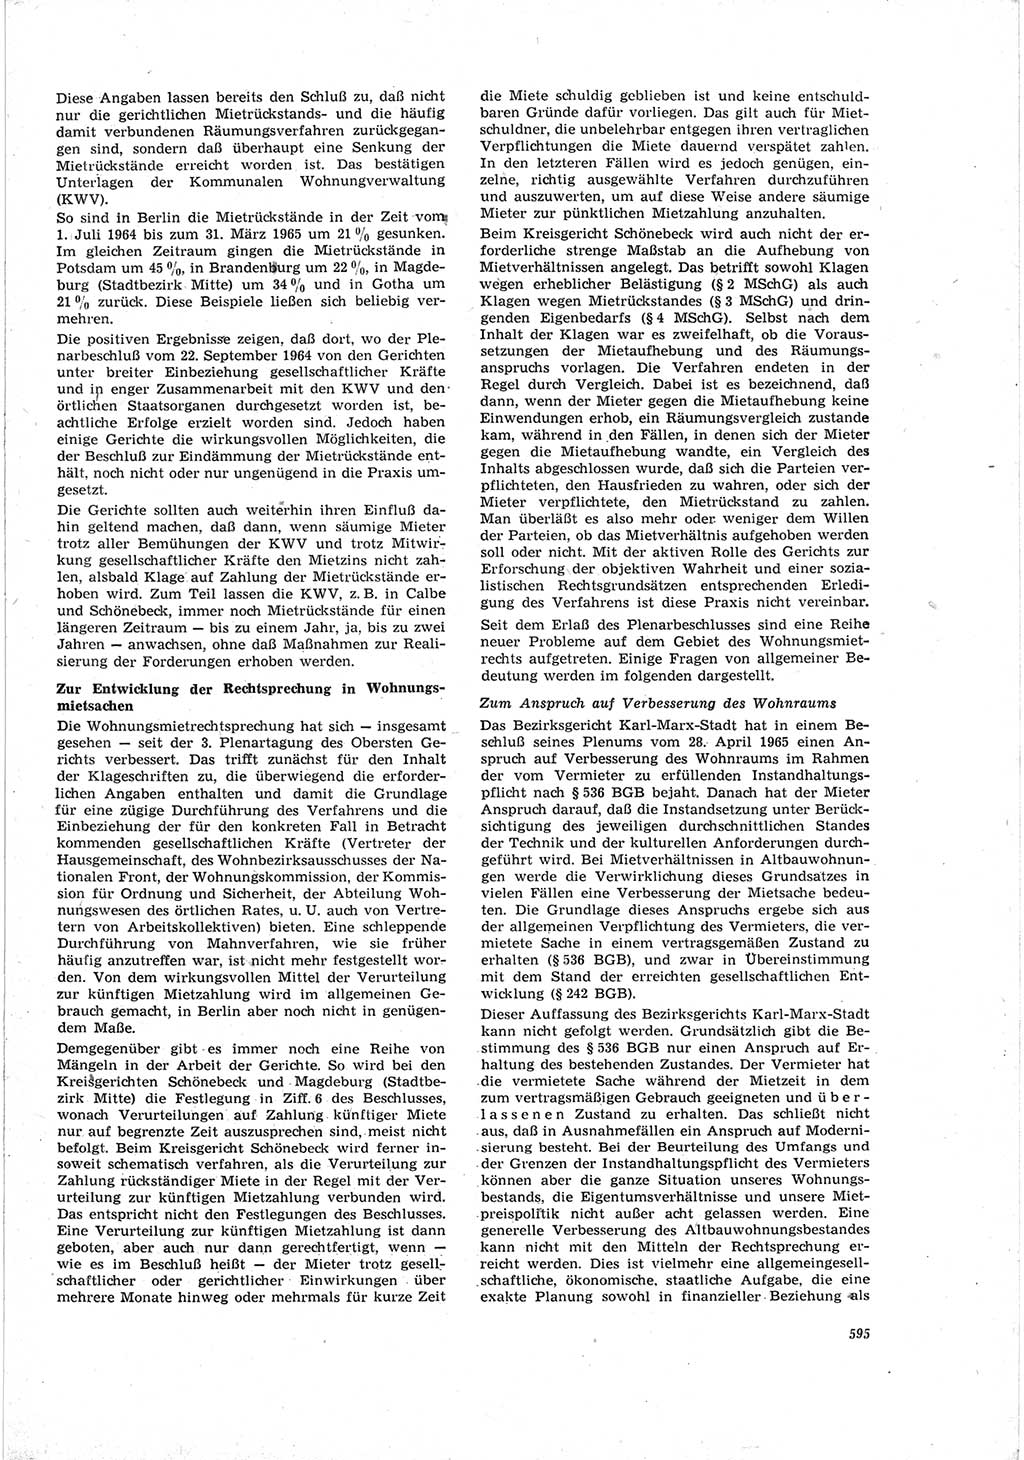 Neue Justiz (NJ), Zeitschrift für Recht und Rechtswissenschaft [Deutsche Demokratische Republik (DDR)], 19. Jahrgang 1965, Seite 595 (NJ DDR 1965, S. 595)